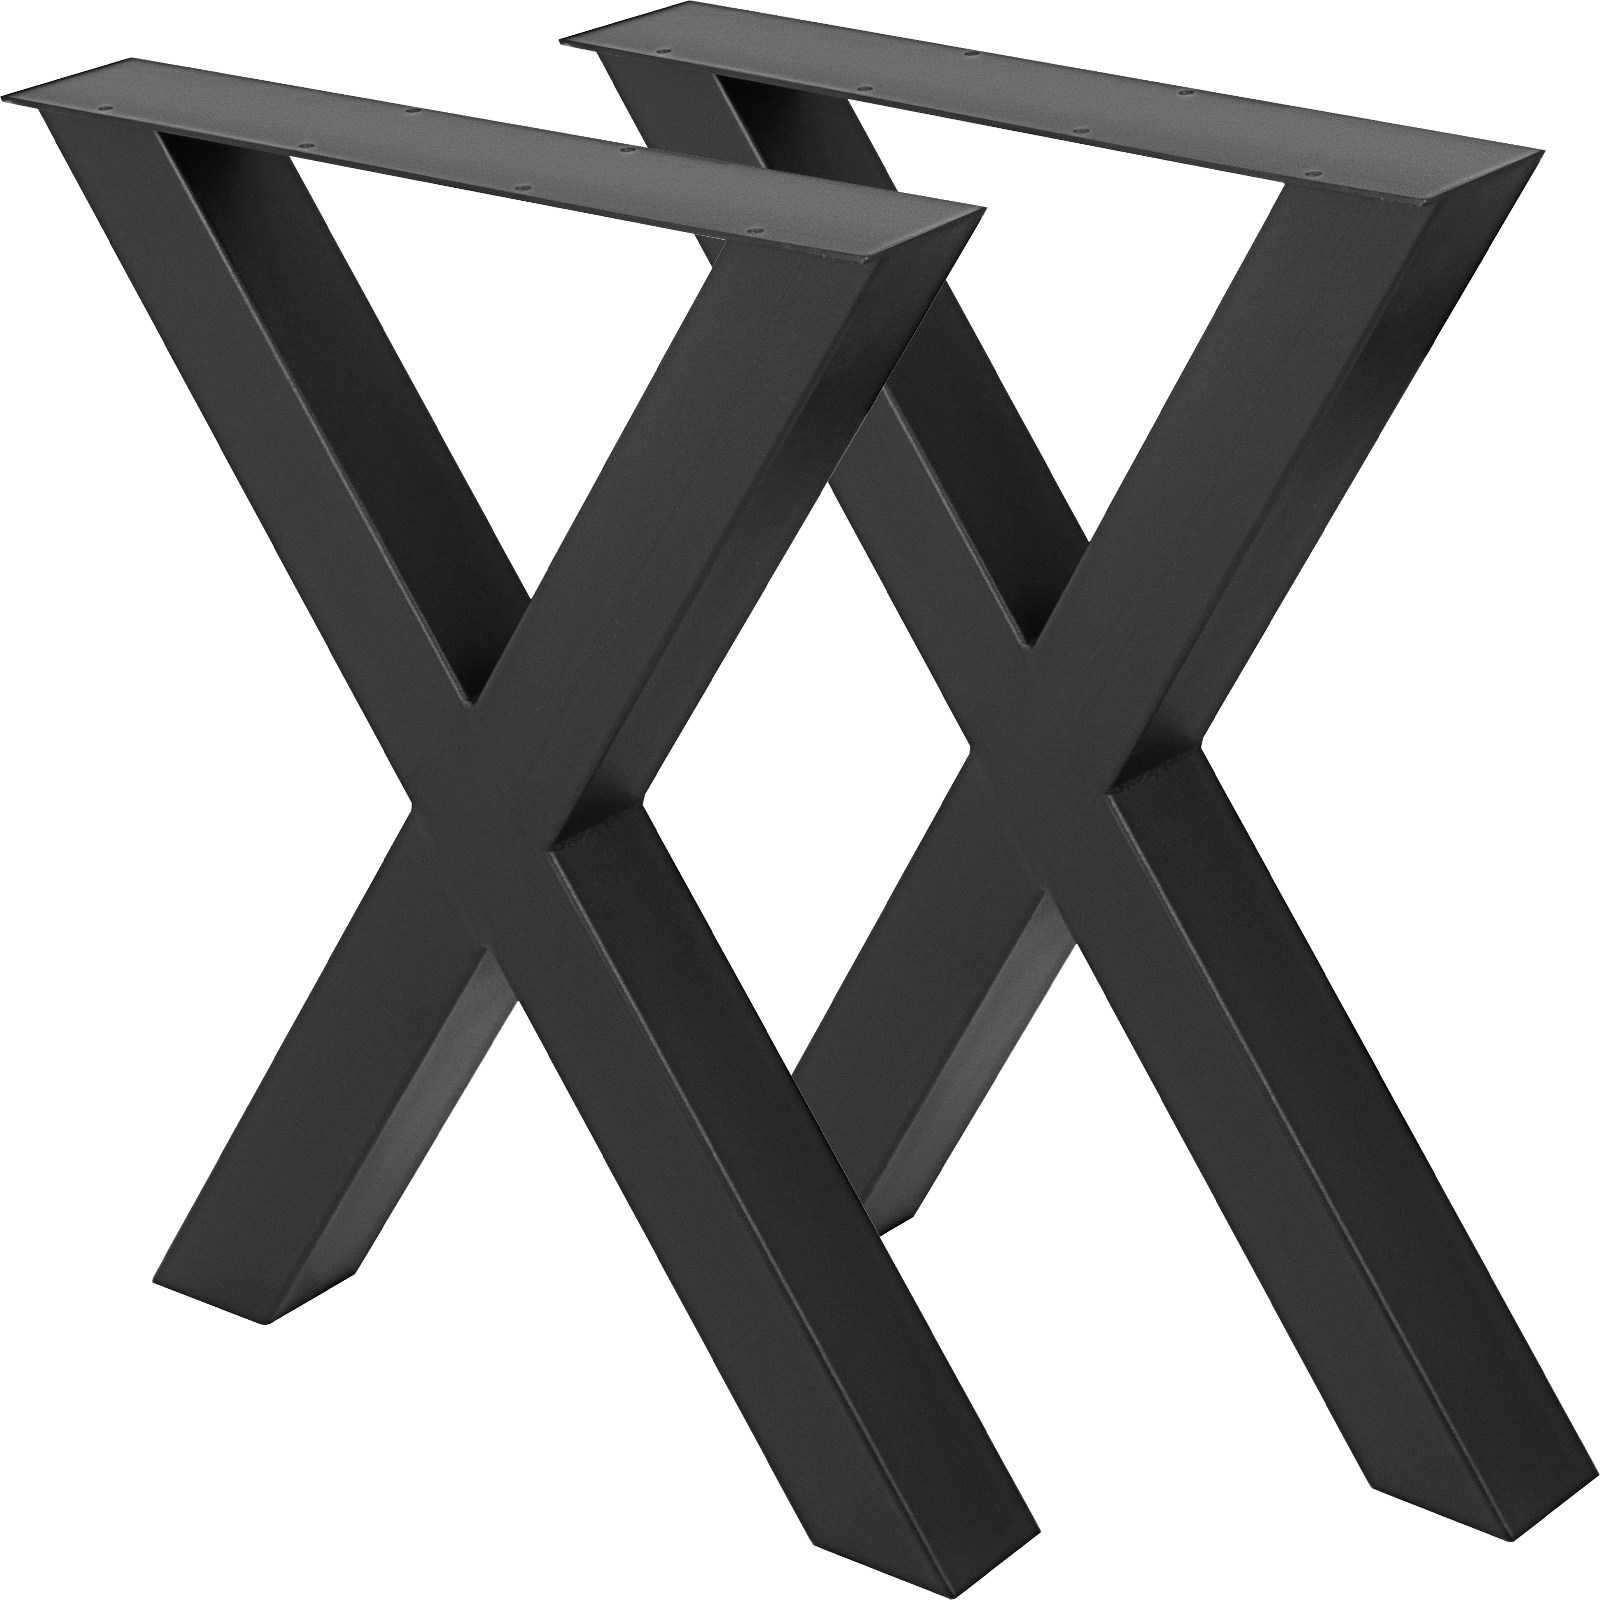 VEVOR ножки стола 720 x 760 мм X-Frame, каркас стола 28,3 x 29,9 дюймов, направляющие из нержавеющей стали, черные, легкая сборка, ножки стола, металлические черные аксессуары для стола, стол для обеденного стола, журнальный столик